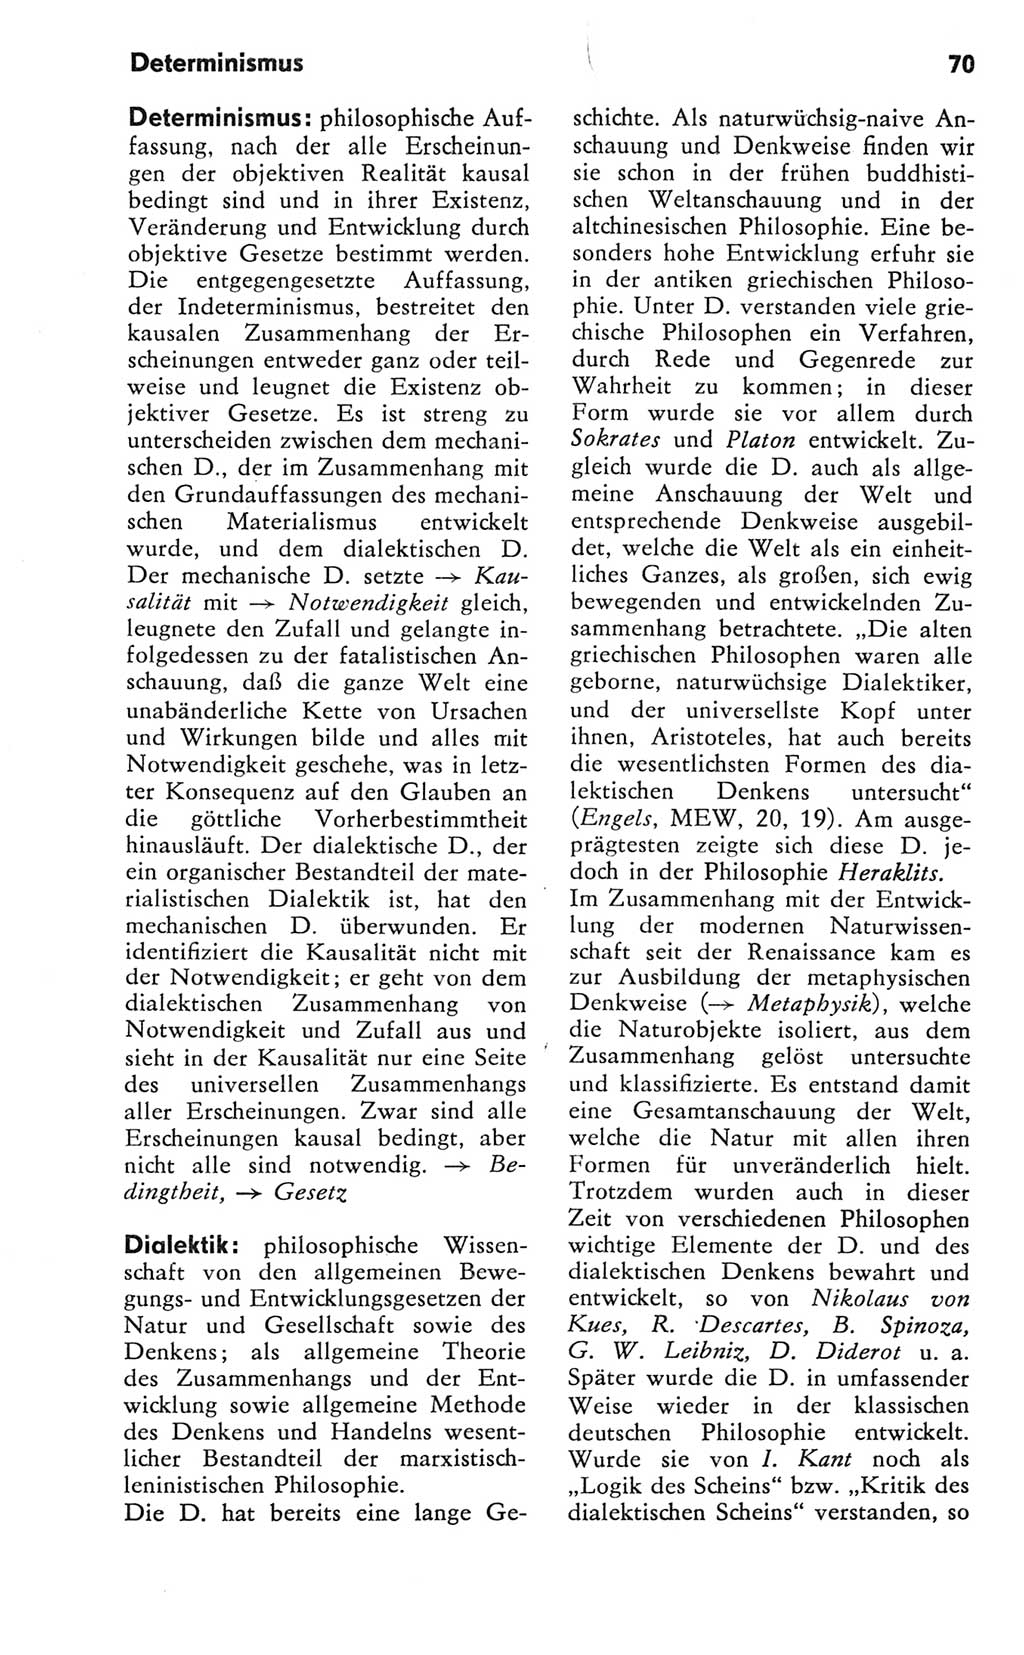 Kleines Wörterbuch der marxistisch-leninistischen Philosophie [Deutsche Demokratische Republik (DDR)] 1981, Seite 70 (Kl. Wb. ML Phil. DDR 1981, S. 70)